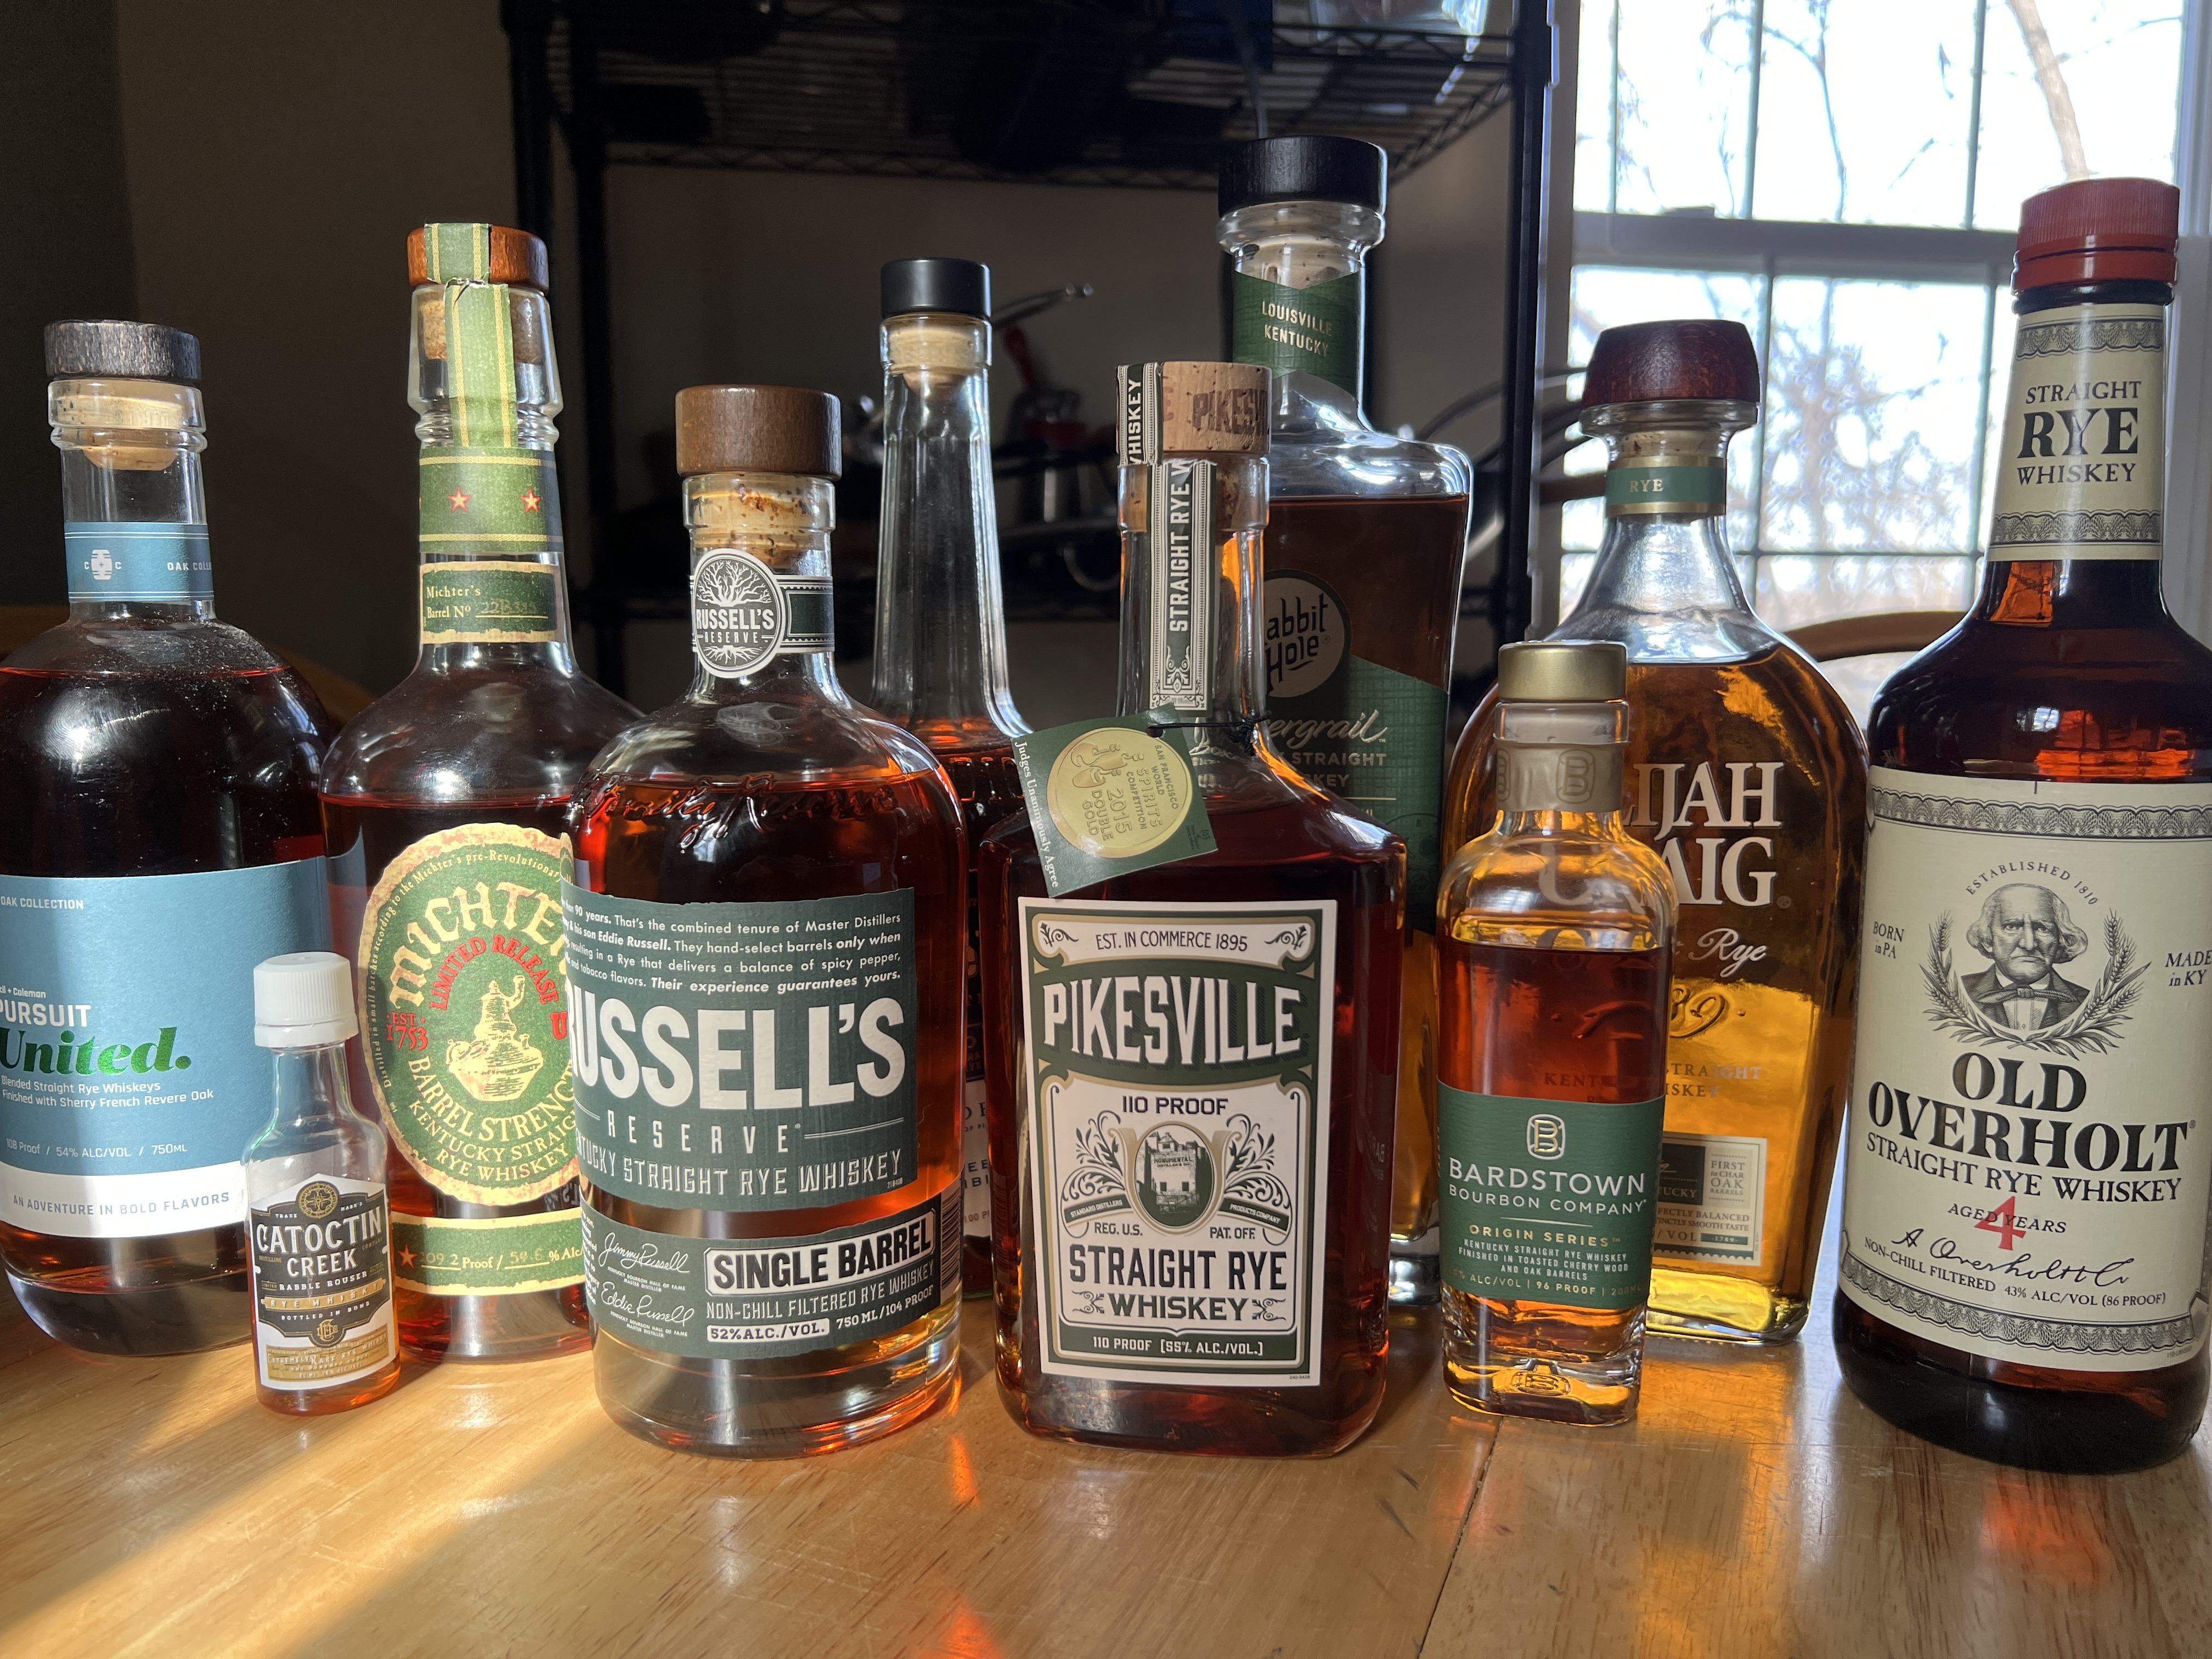 Classic Vs. New Rye Whiskeys